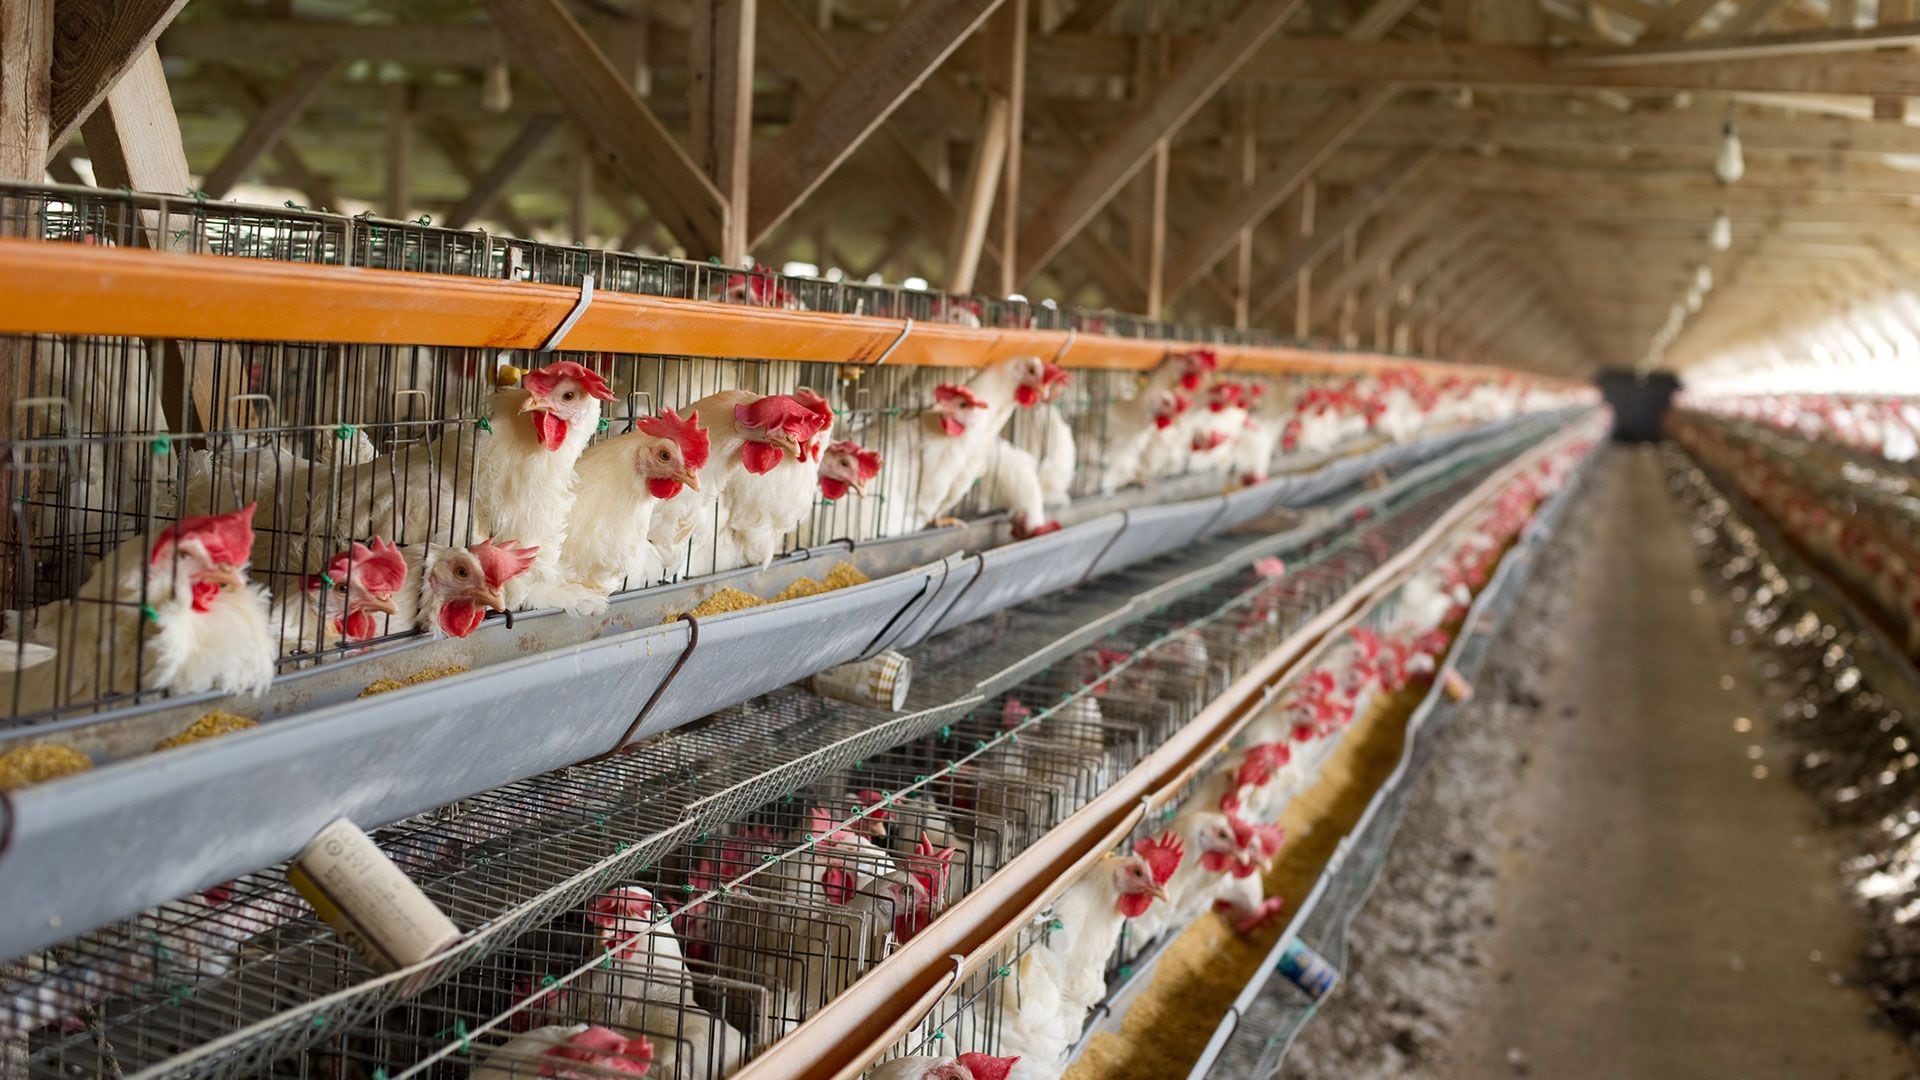 La queja surgió luego de 12 casos detectados de gripe aviar en distintas zonas de producción del Japón (Getty Images)